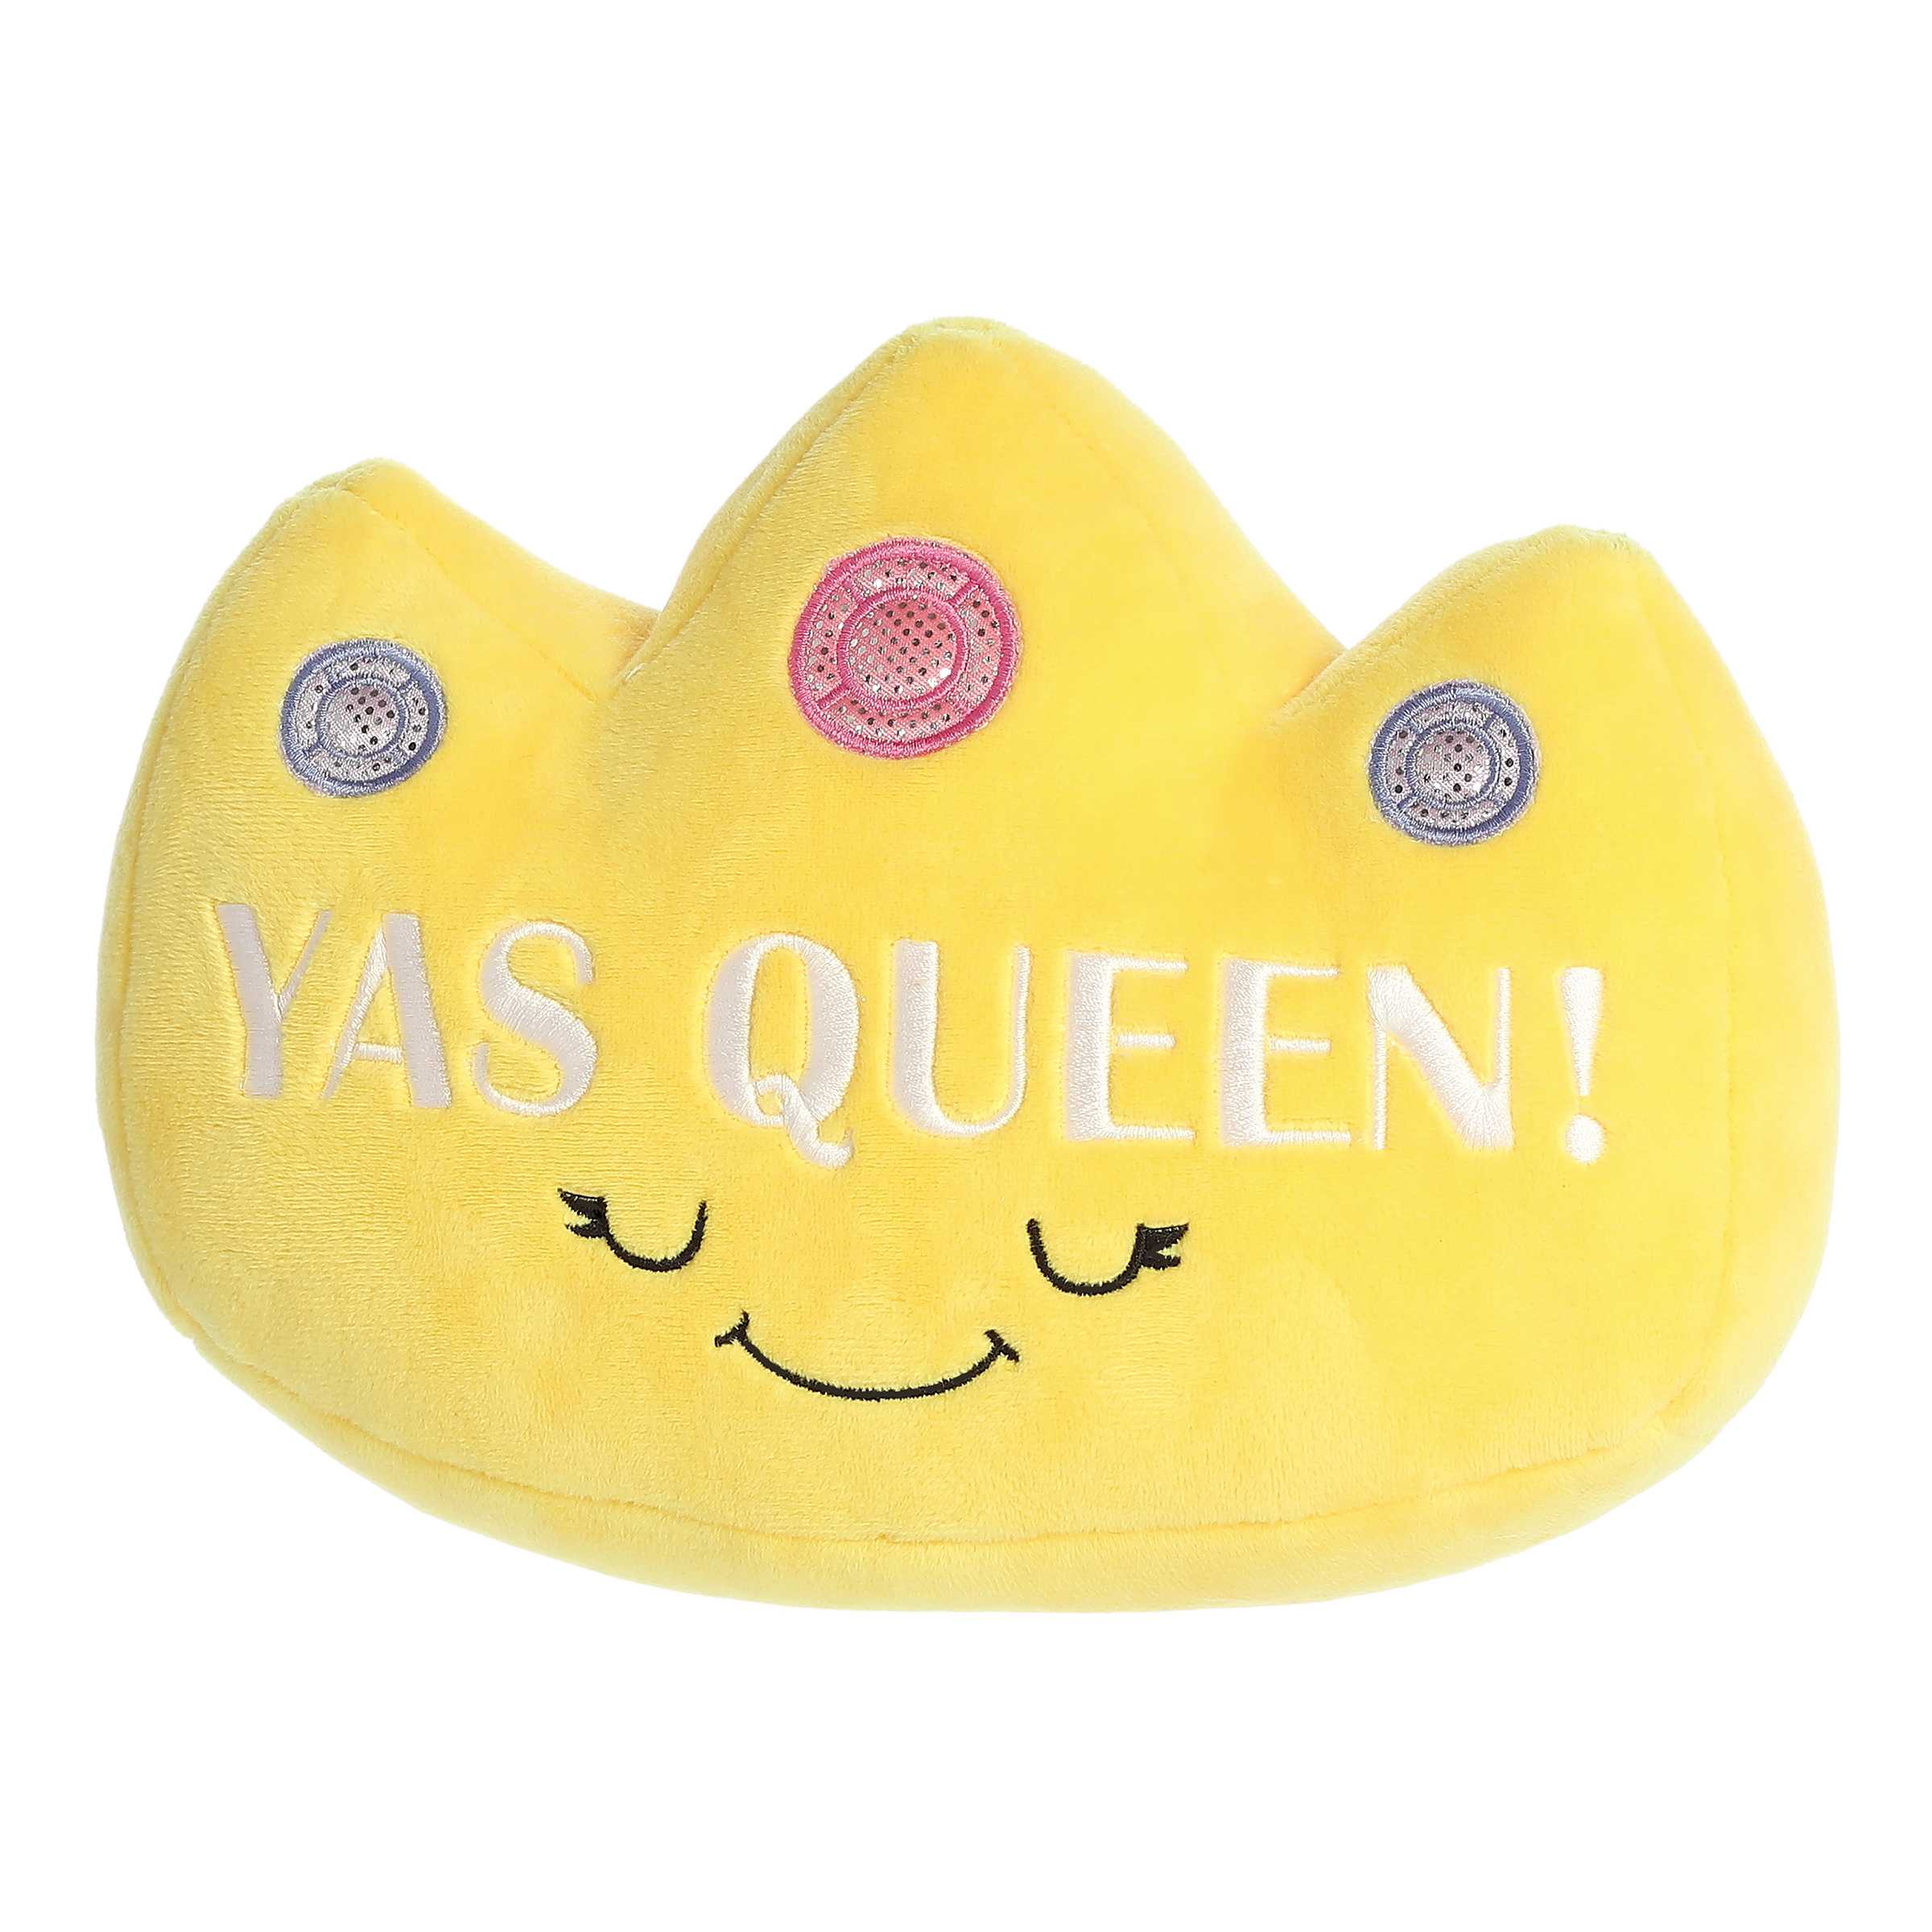 Aurora® - JUST SAYIN'™ - 7" Yas Queen! Crown™